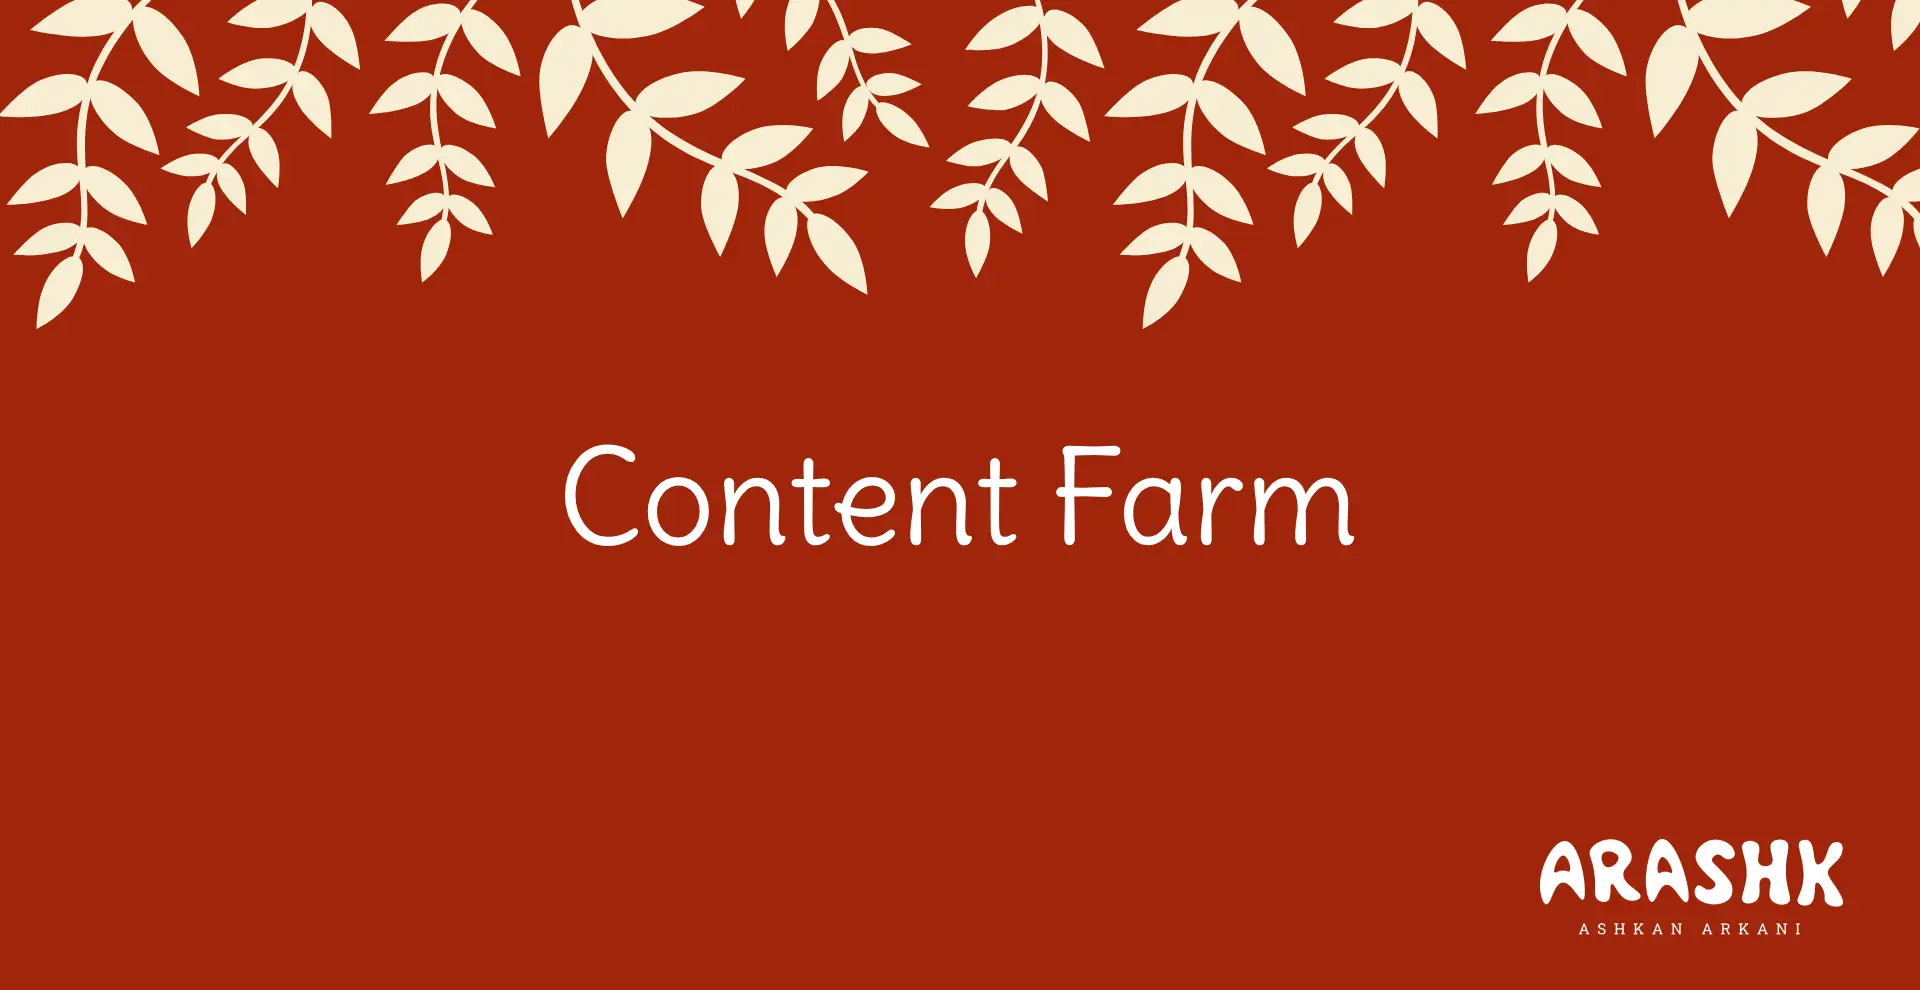 مزرعه‌ محتوا (Content Farm) چیست